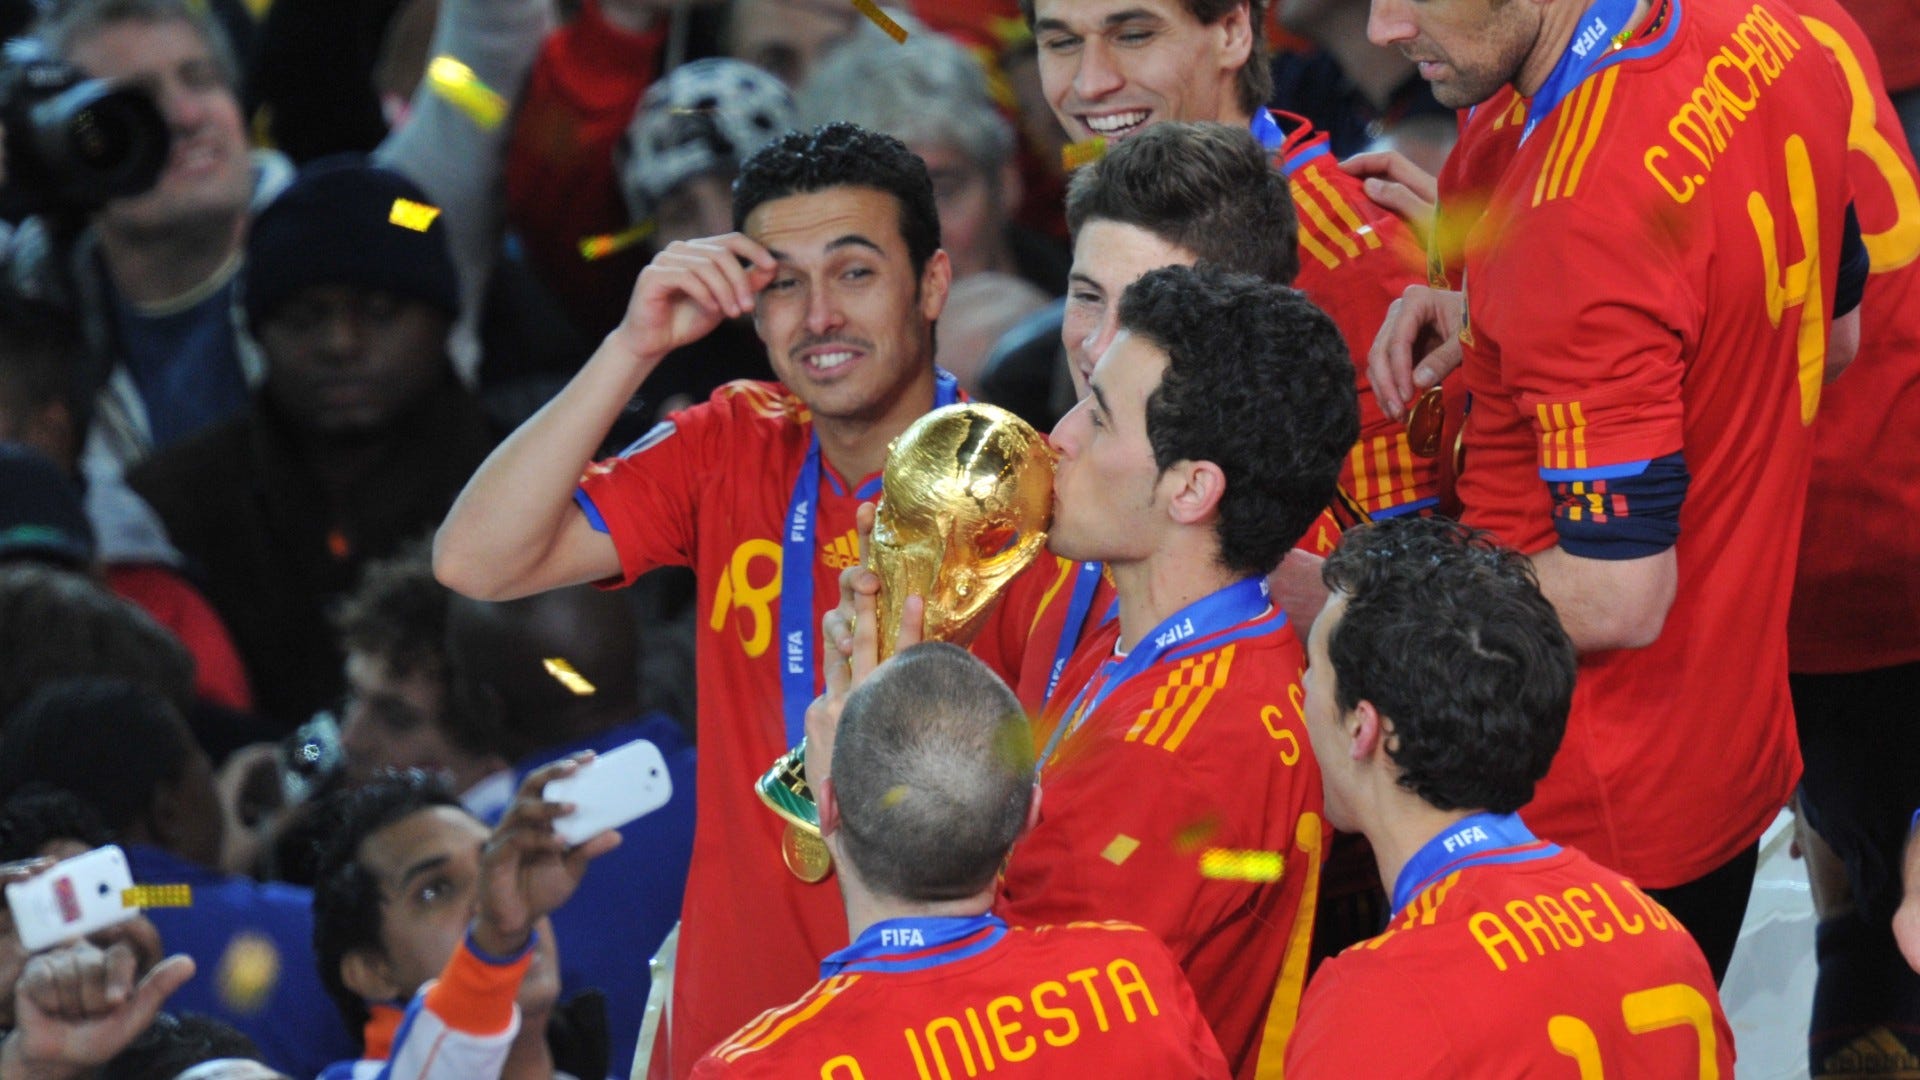 Seleções Imortais – Espanha 2008-2012 - Imortais do Futebol